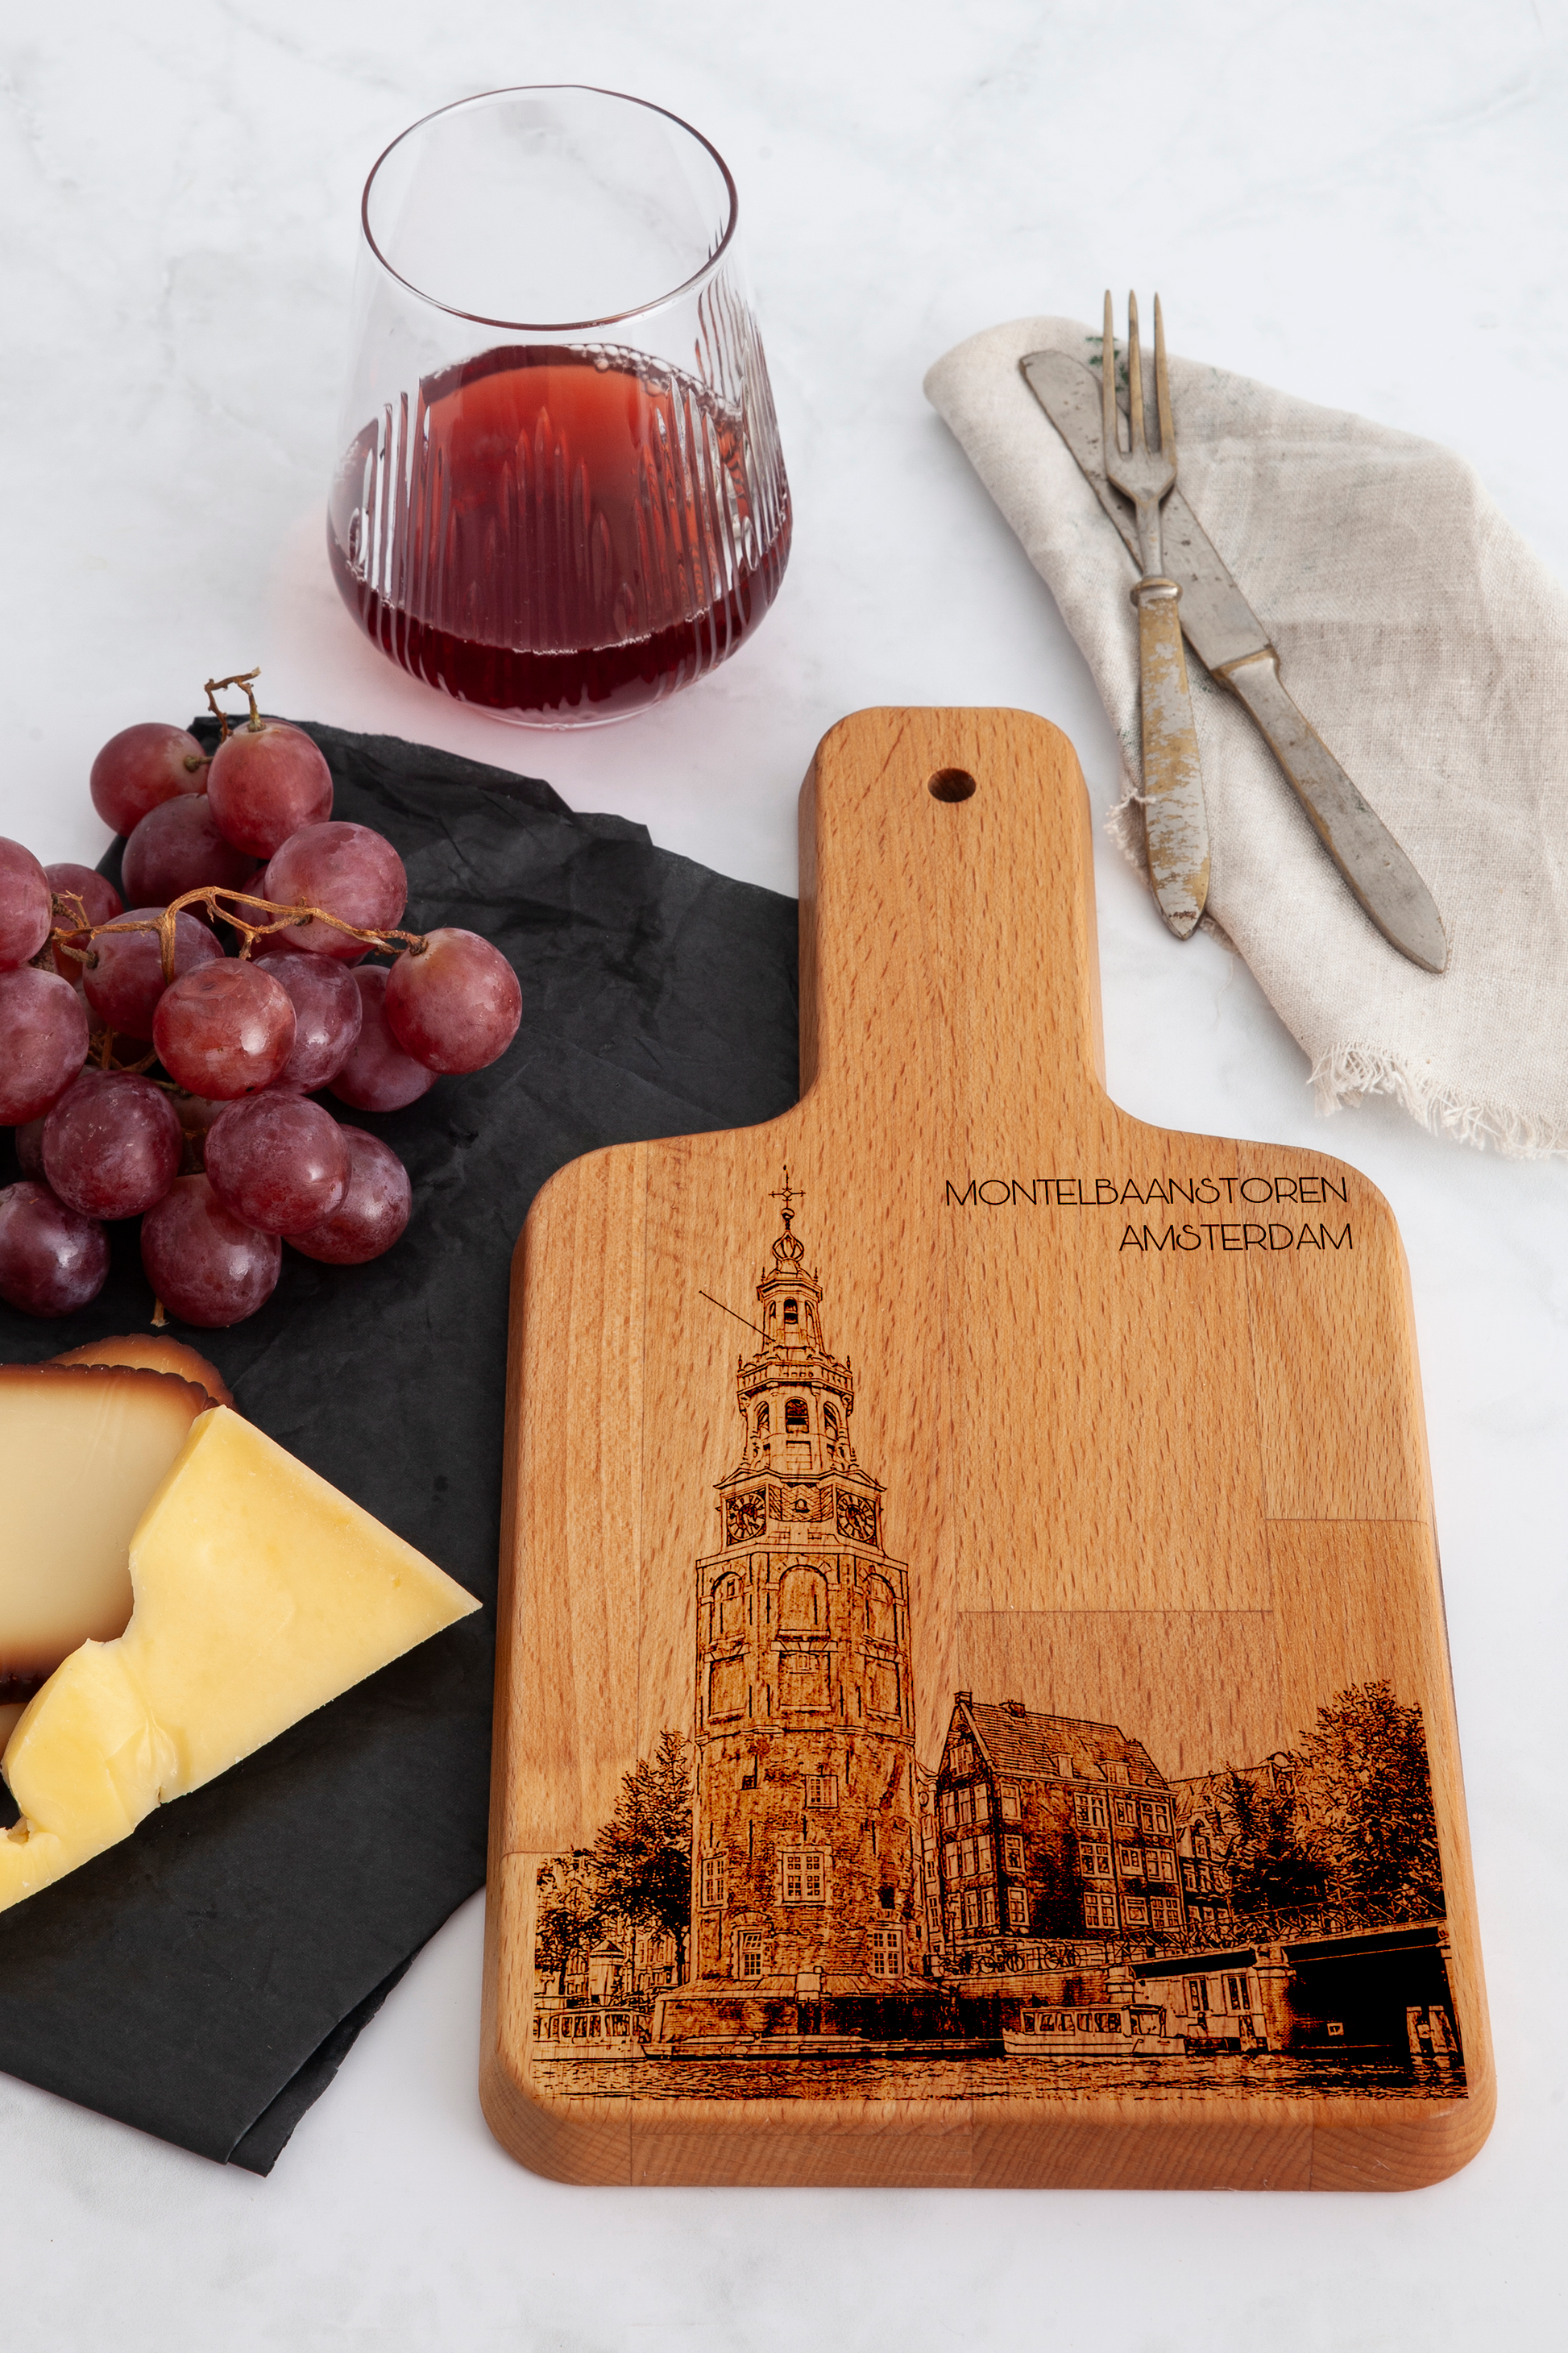 Amsterdam, Montelbaanstoren, cheese board, on countertop